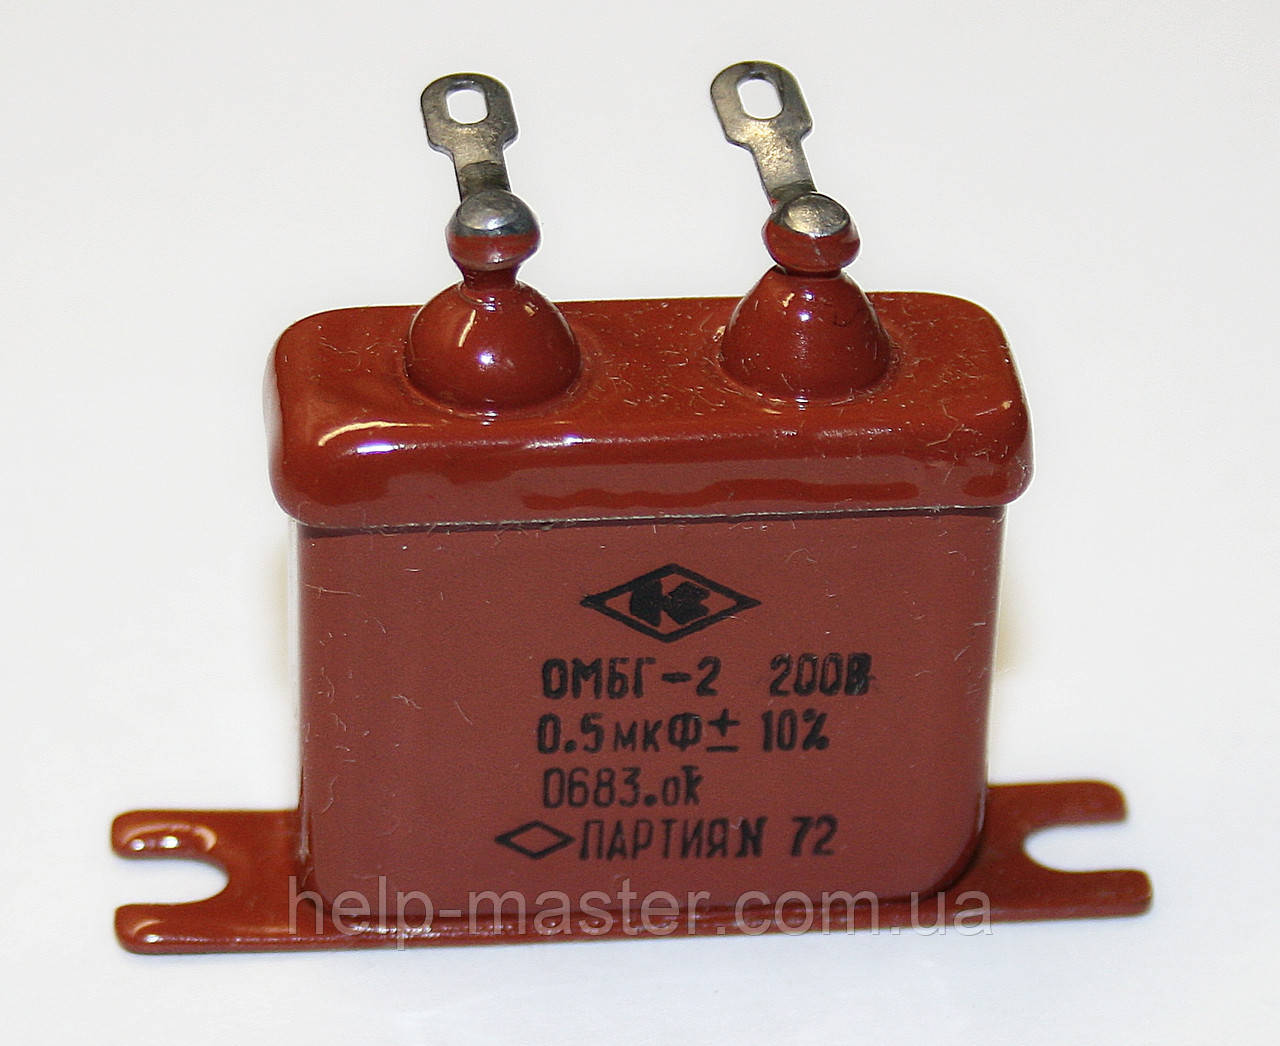 Конденсатор ОМБГ-2 0,5 мкф. 200 В